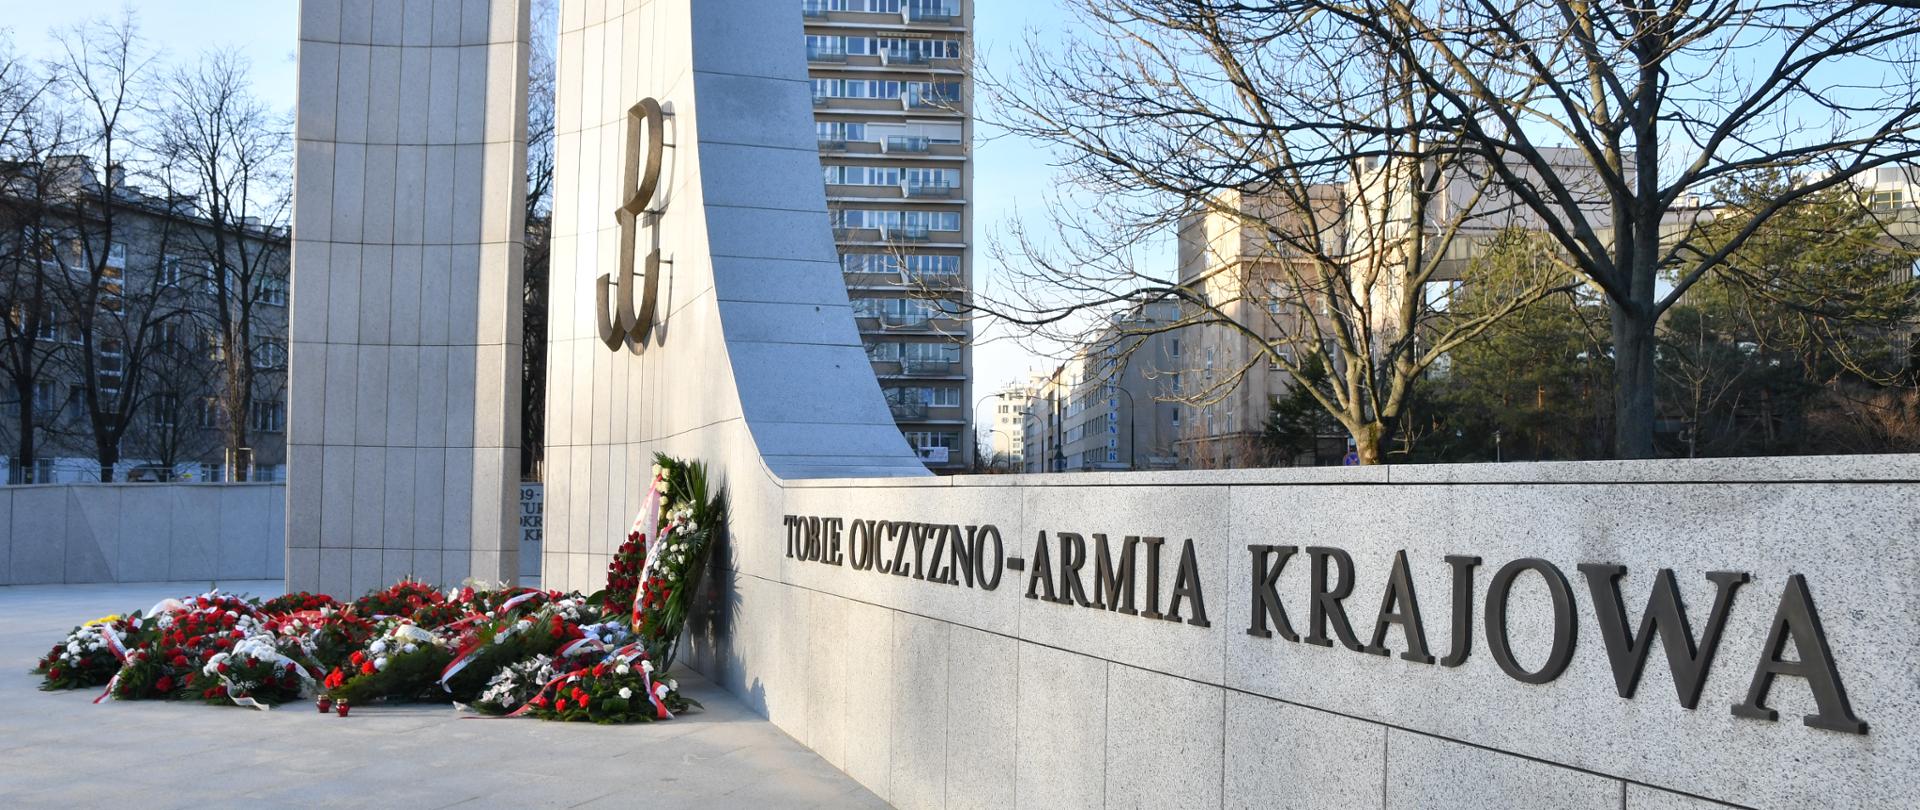 Pomnik Armii Krajowej. Warszawa